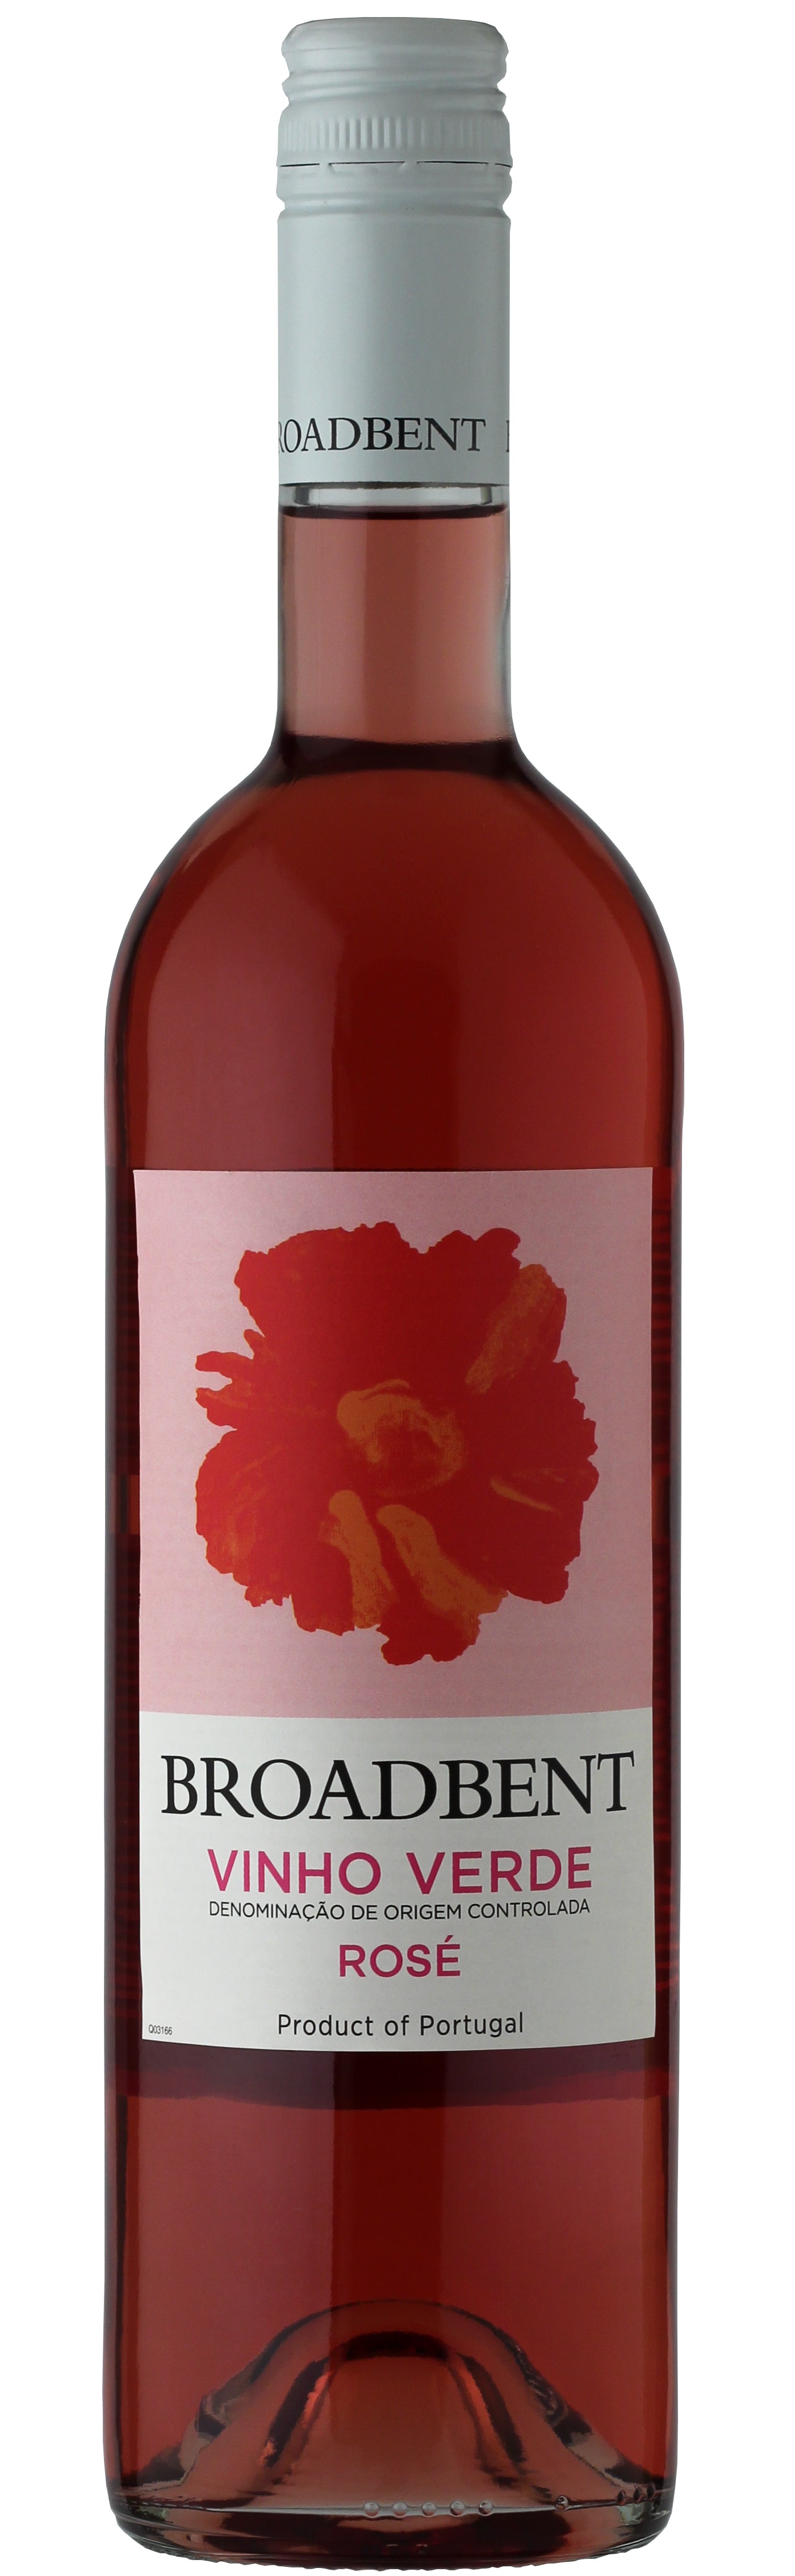 Broadbent Vinho Verde Rose 750ml-0